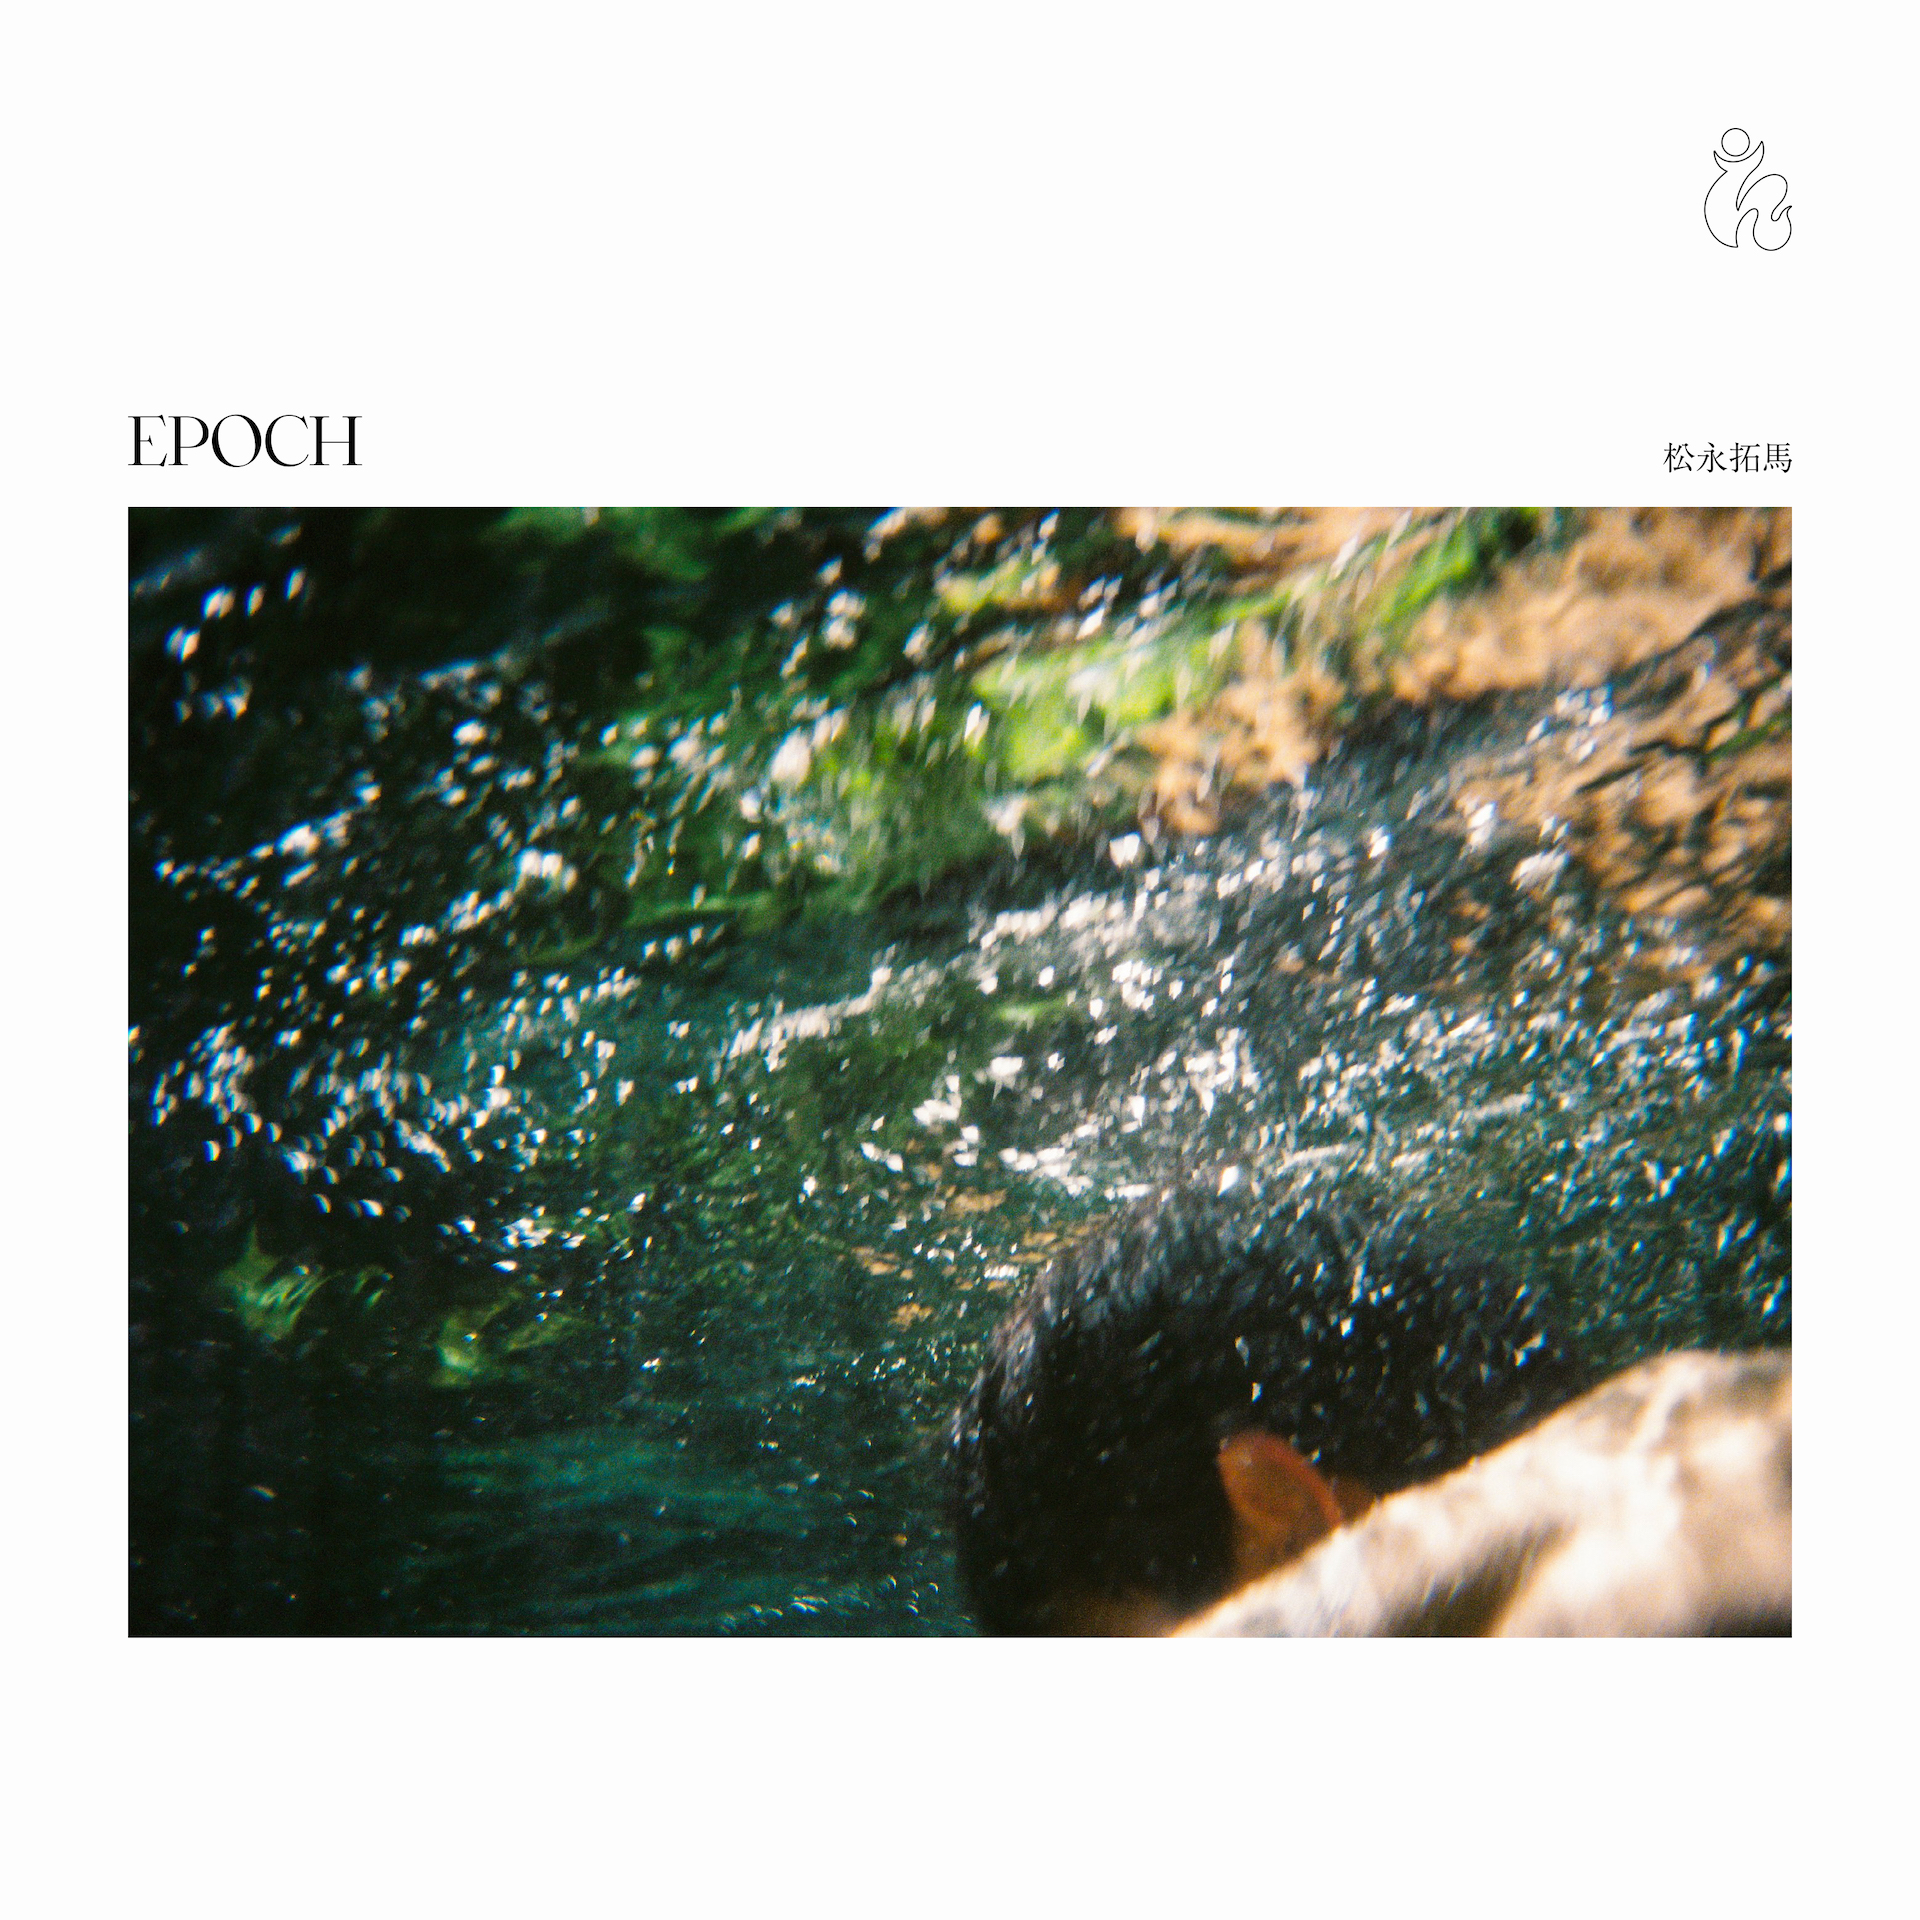 松永拓馬、プロデューサーにMiru Shinoda（yahyel）を迎えた2ndアルバム『Epoch』をリリース｜大部分の音をアナログ・シンセサイザーより生成した「音響的な軌跡」 music240201-takuma-matsunaga1